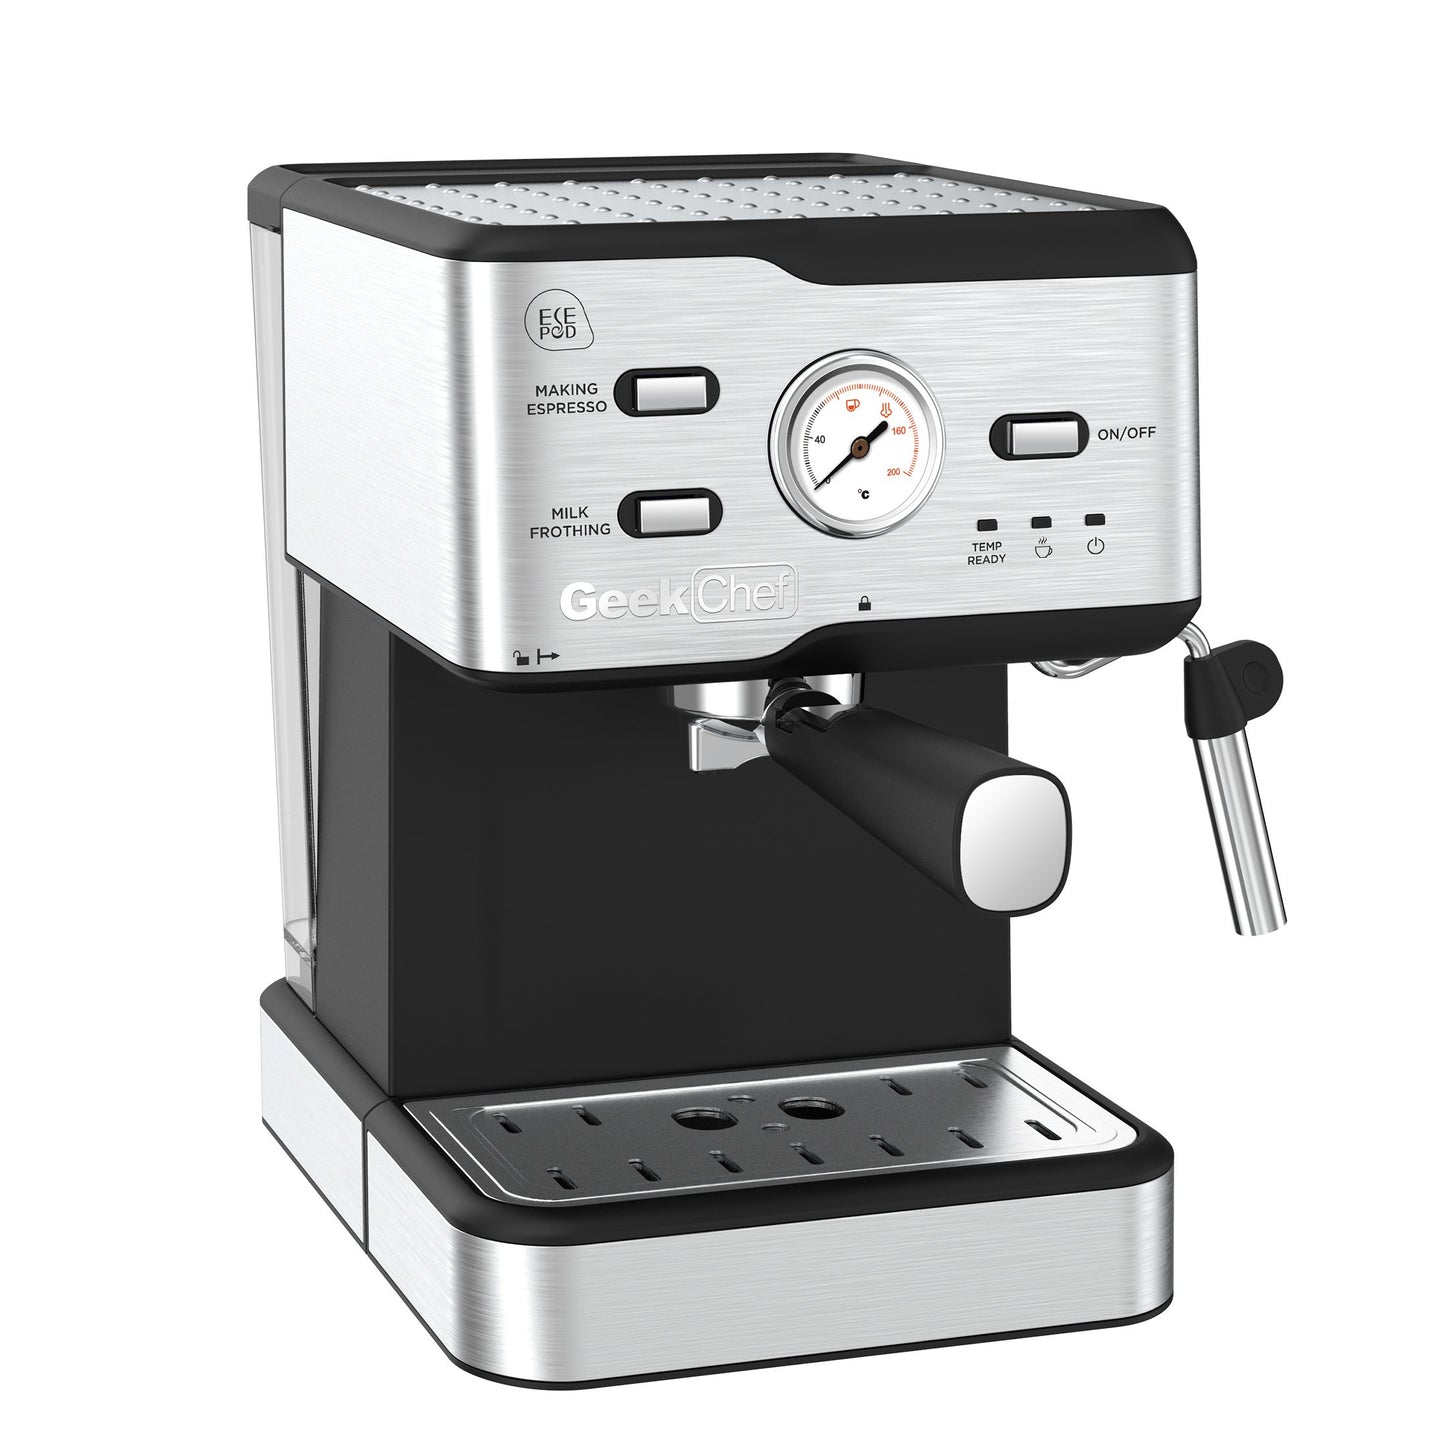 Máquina de café expresso 20 bar pressão da bomba cappuccino máquina de café com leite com filtro ese pod e bocal de leite varinha de vapor e termômetro, tanque de água de 1,5 l, proibição de café expresso em aço inoxidável na amazon